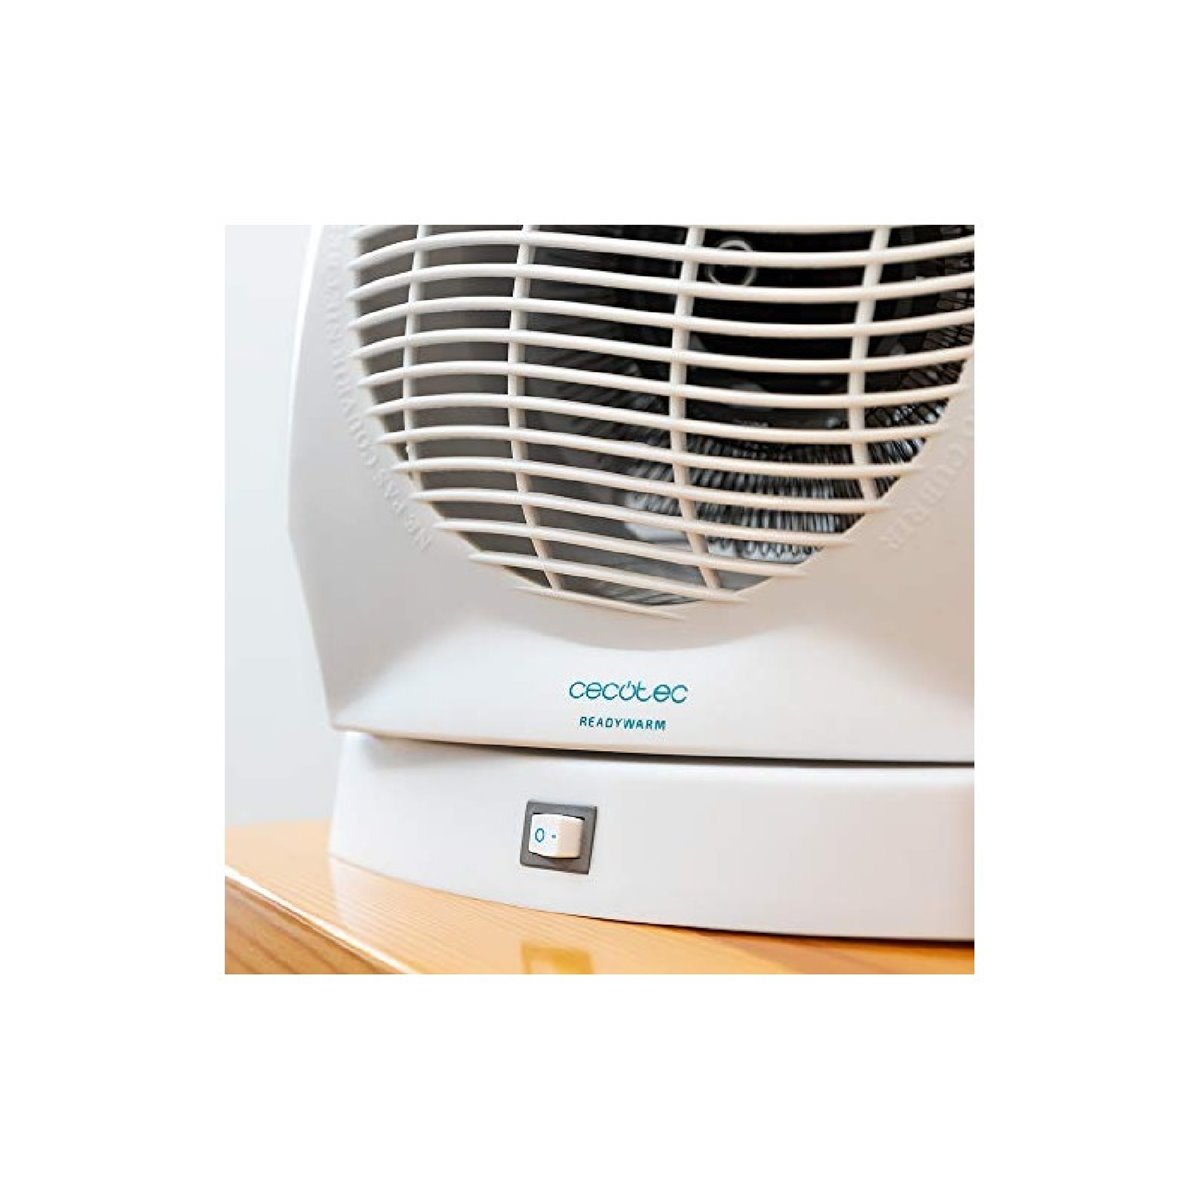 ADLER AD 7728 Calefactor Ventilador Eléctrico Portátil, Aire Caliente /  Frío, 2 Niveles de Potencia, Termostato, Sistema